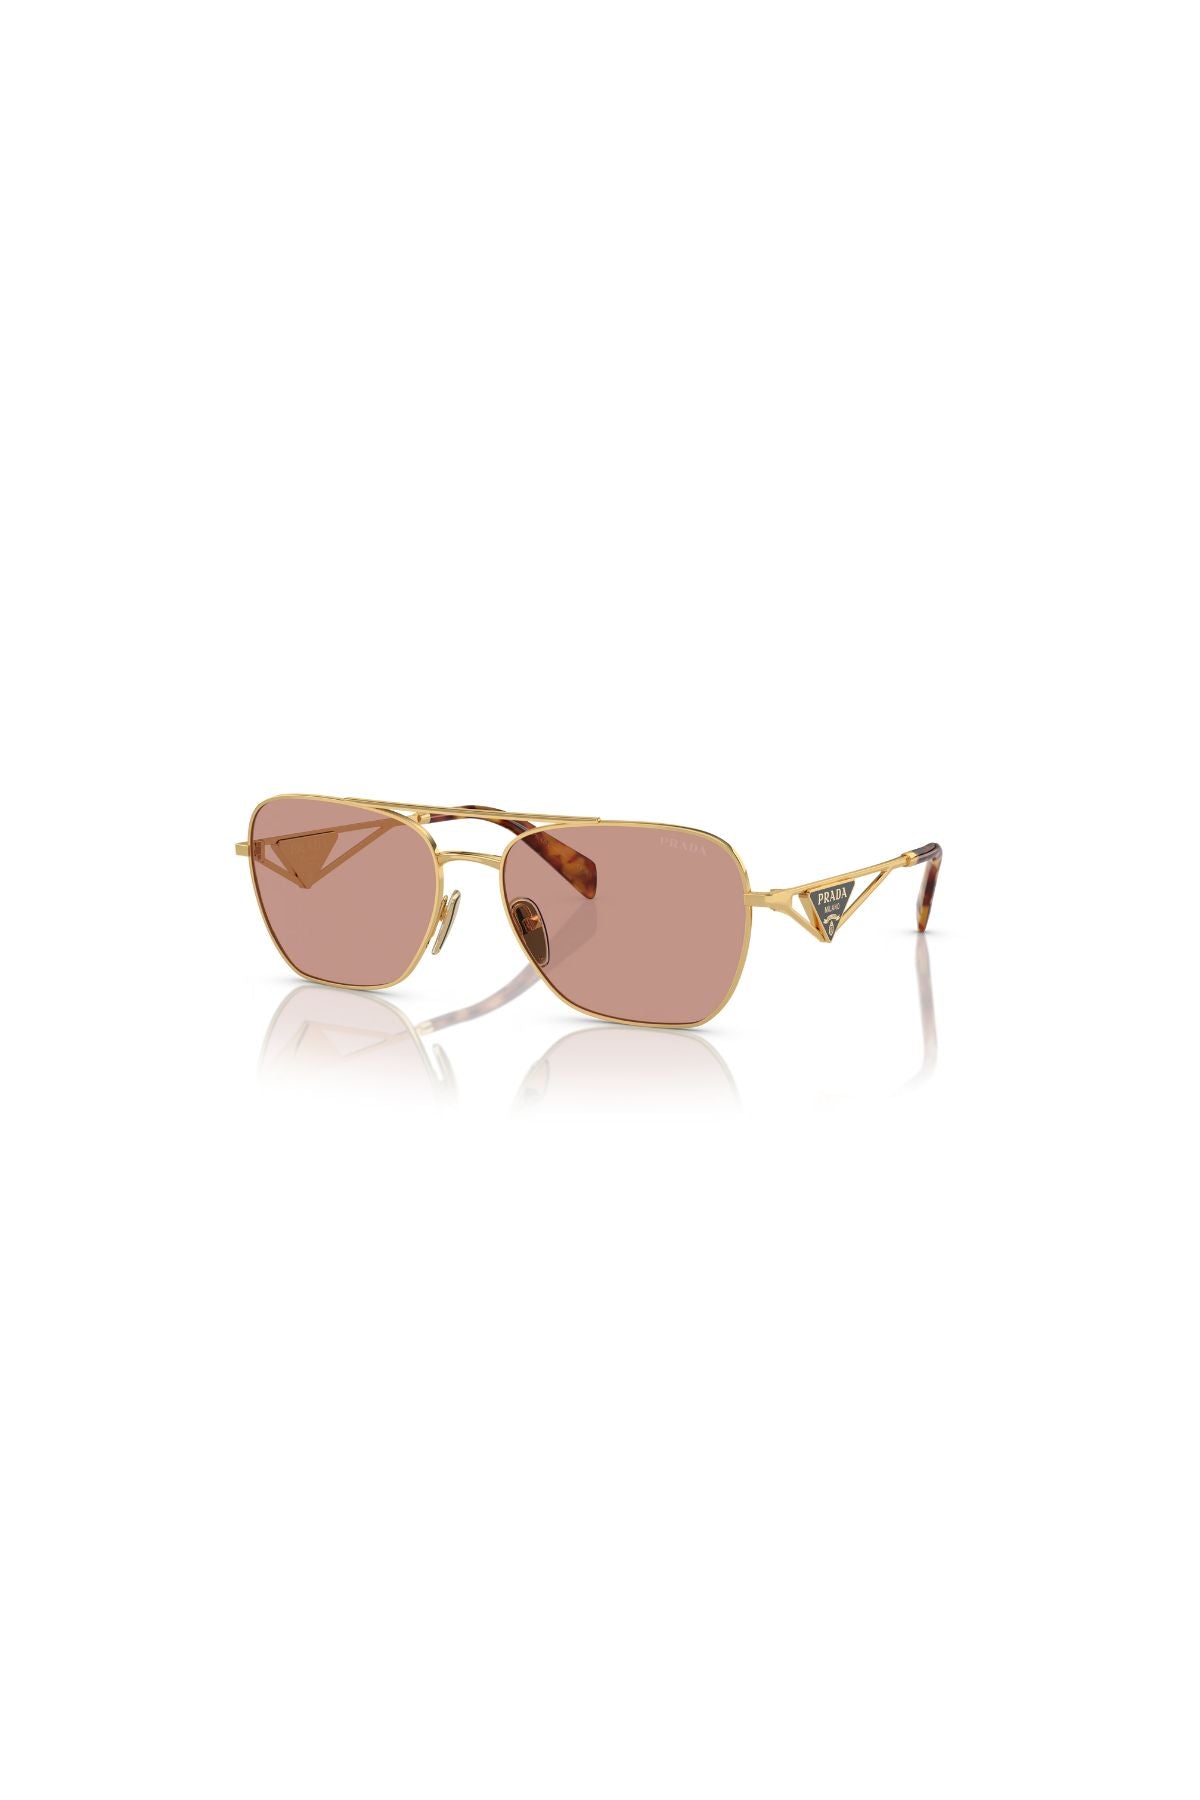 Prada Aviator Sunglasses - Gold/ Violet